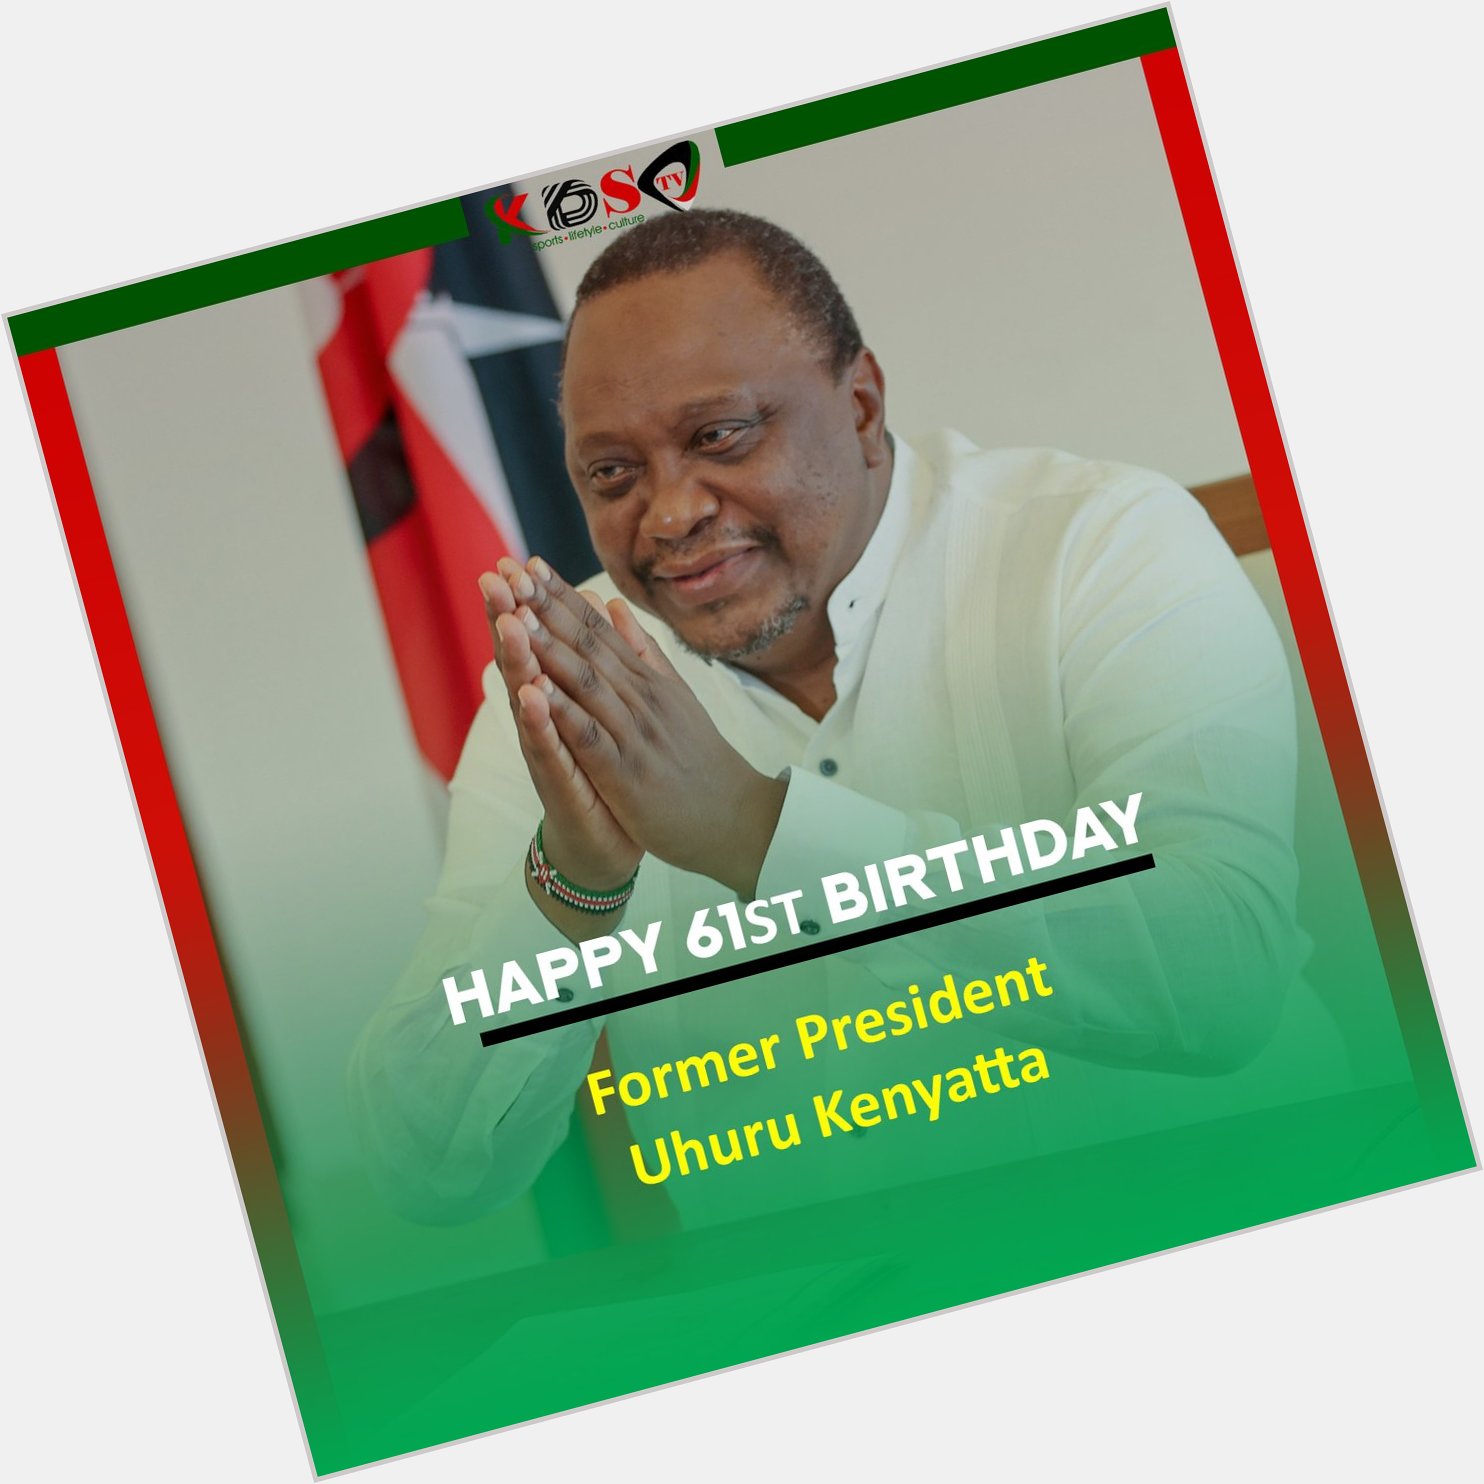 Happy 61st birthday Former President Uhuru Kenyatta. 